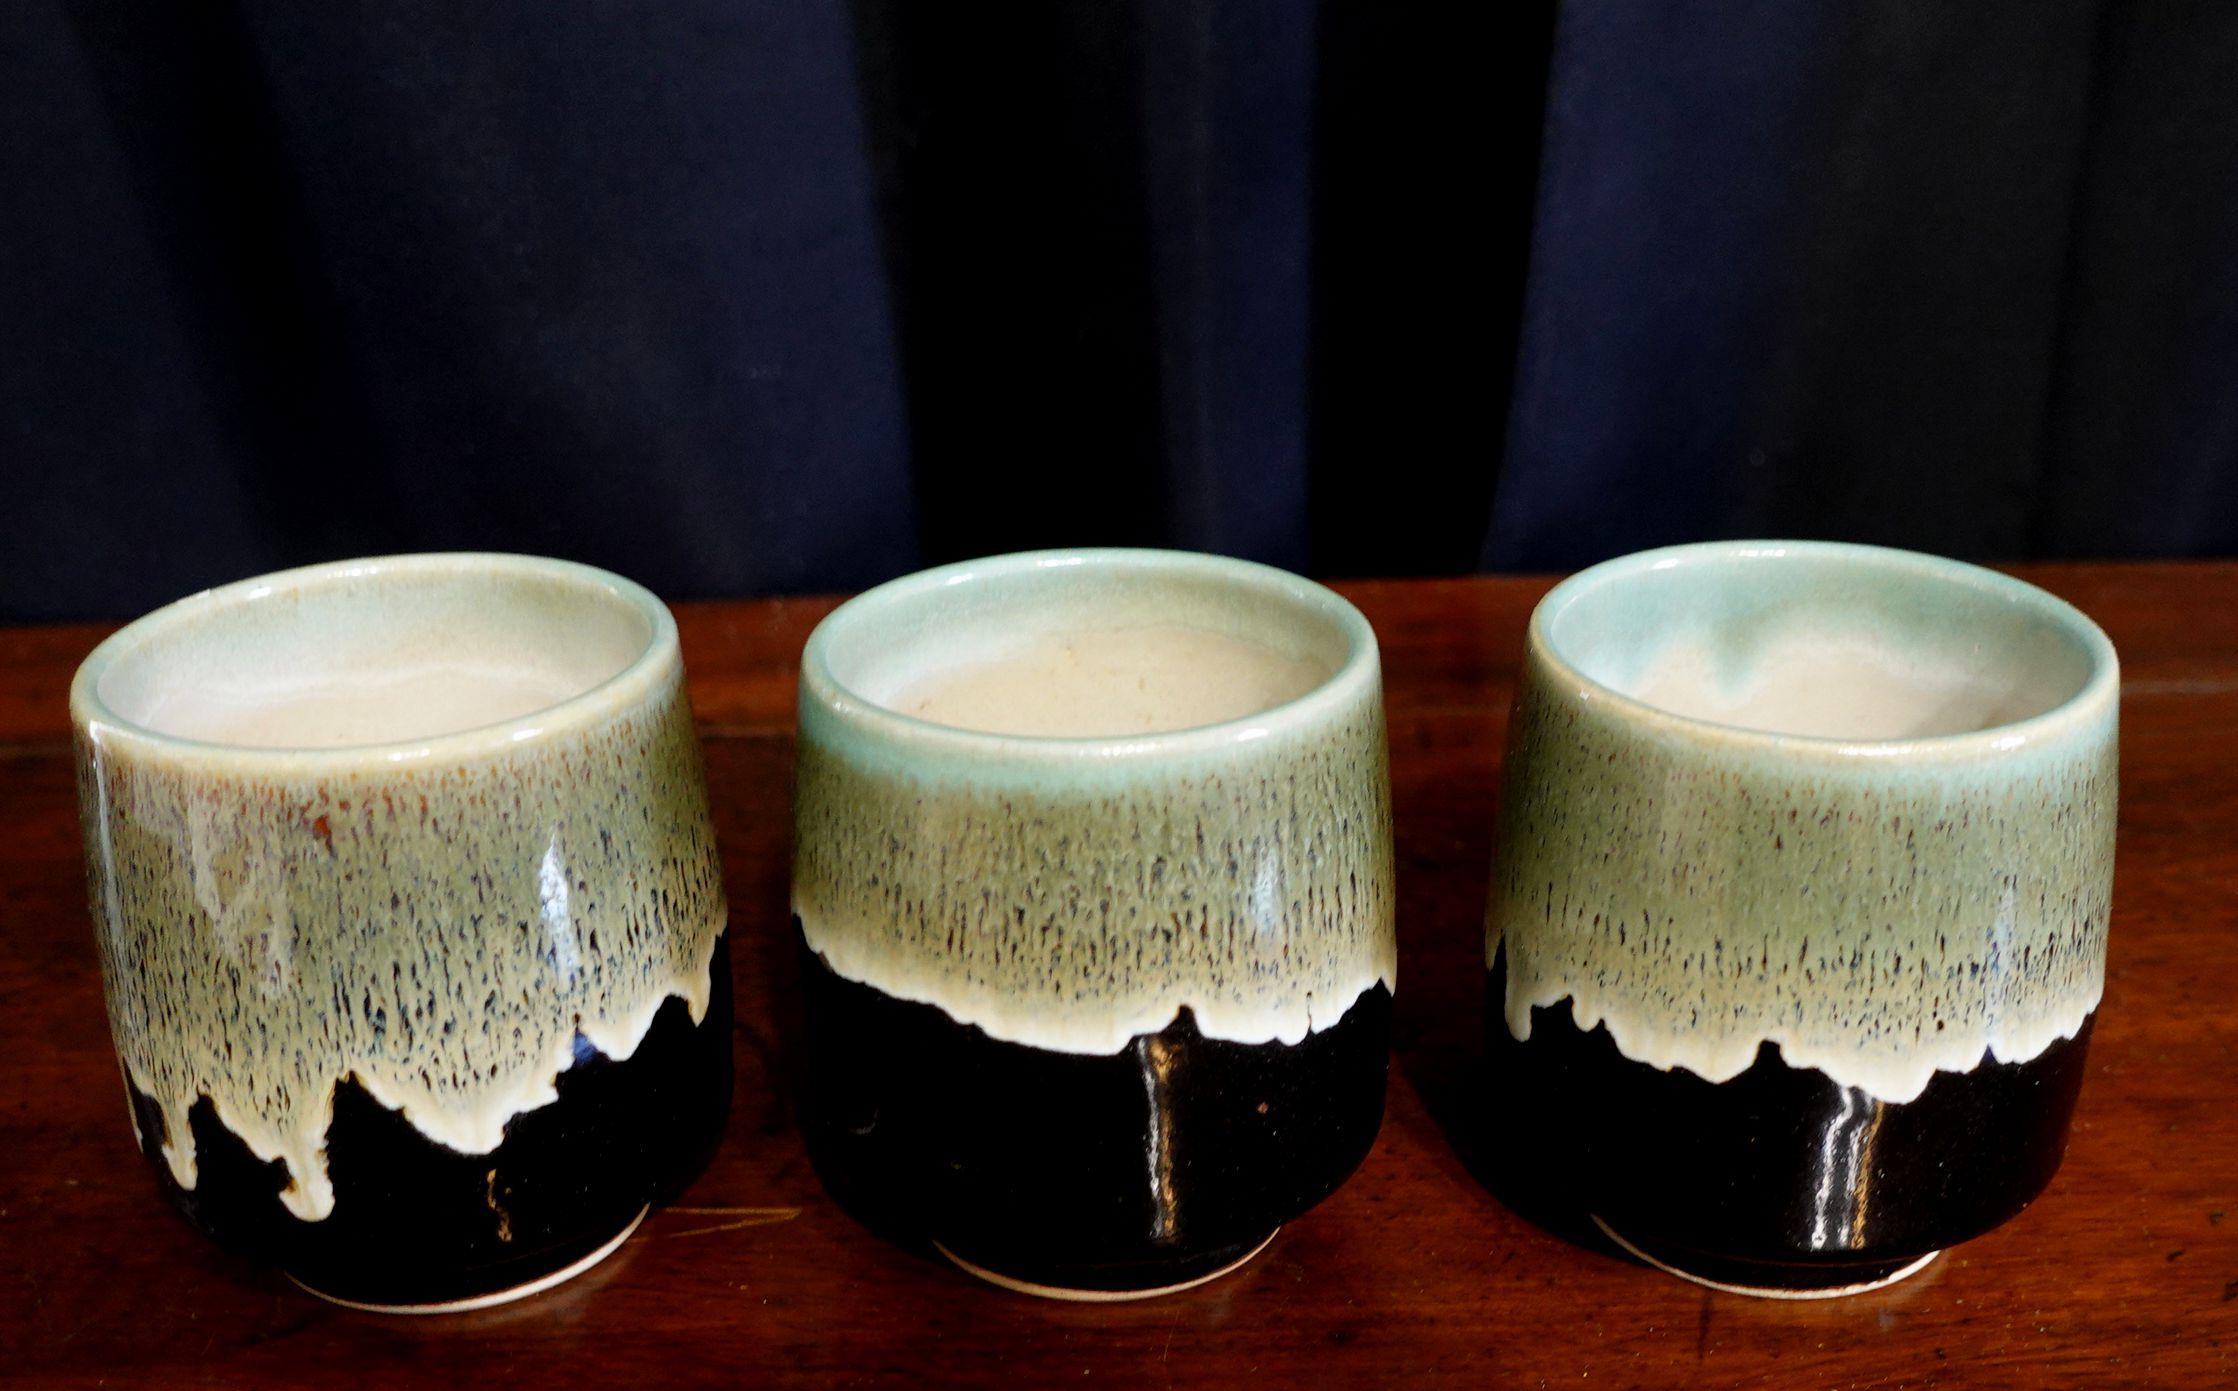 Vintage By 3 tasses à thé japonaises en poterie d'atelier du milieu du siècle.
En bon état d'origine et tout juste trouvé dans l'entrepôt, jamais utilisé auparavant.